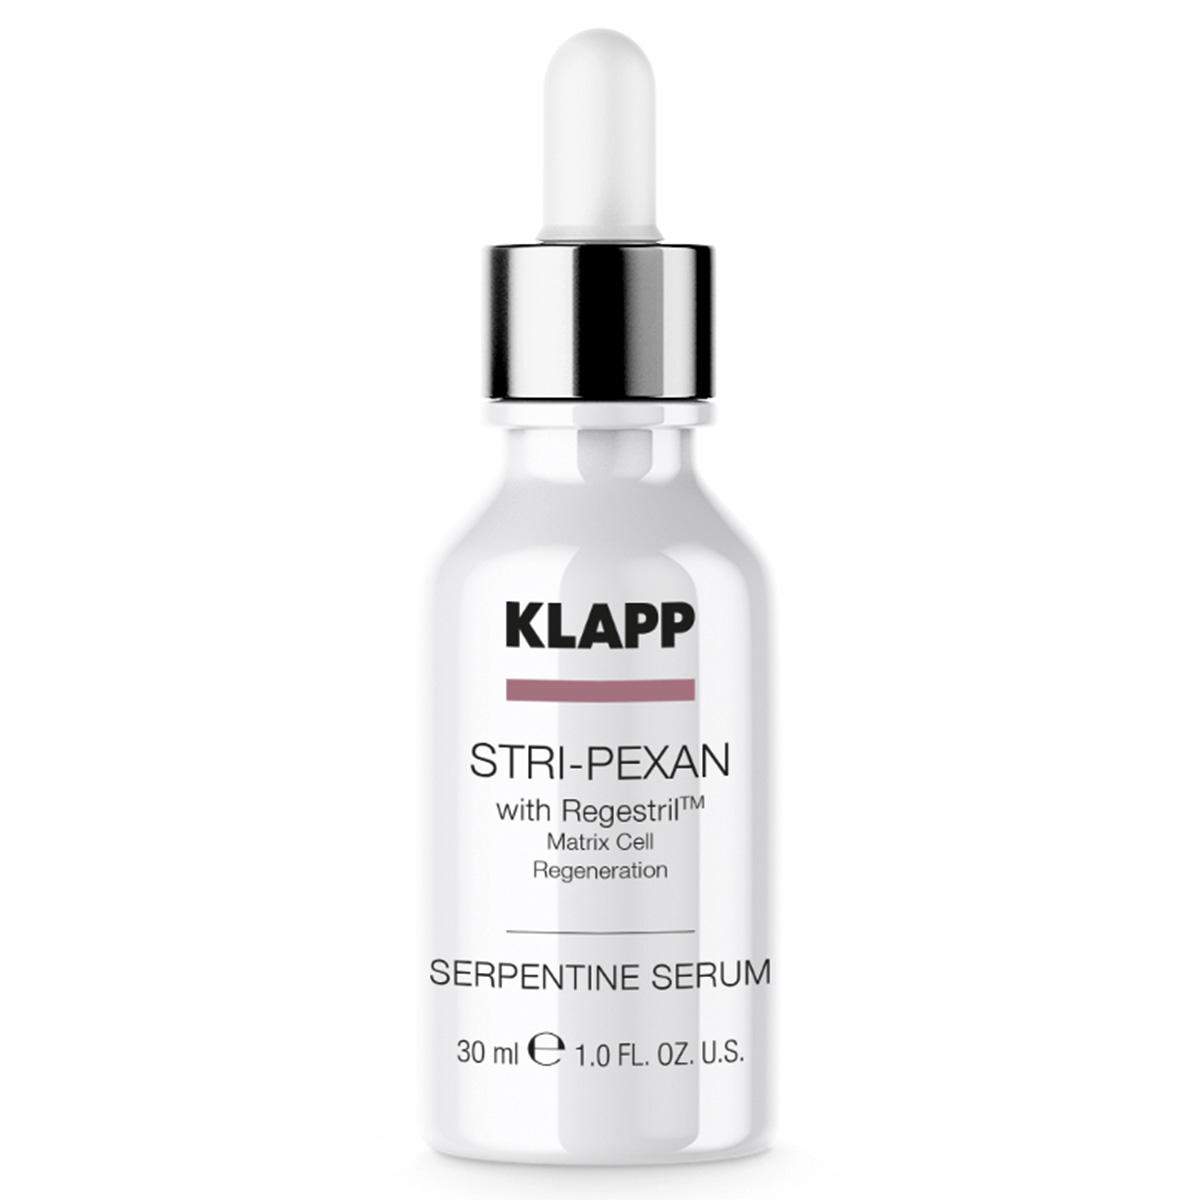 KLAPP STRI-PEXAN Serpentine Serum 30 ml - 1